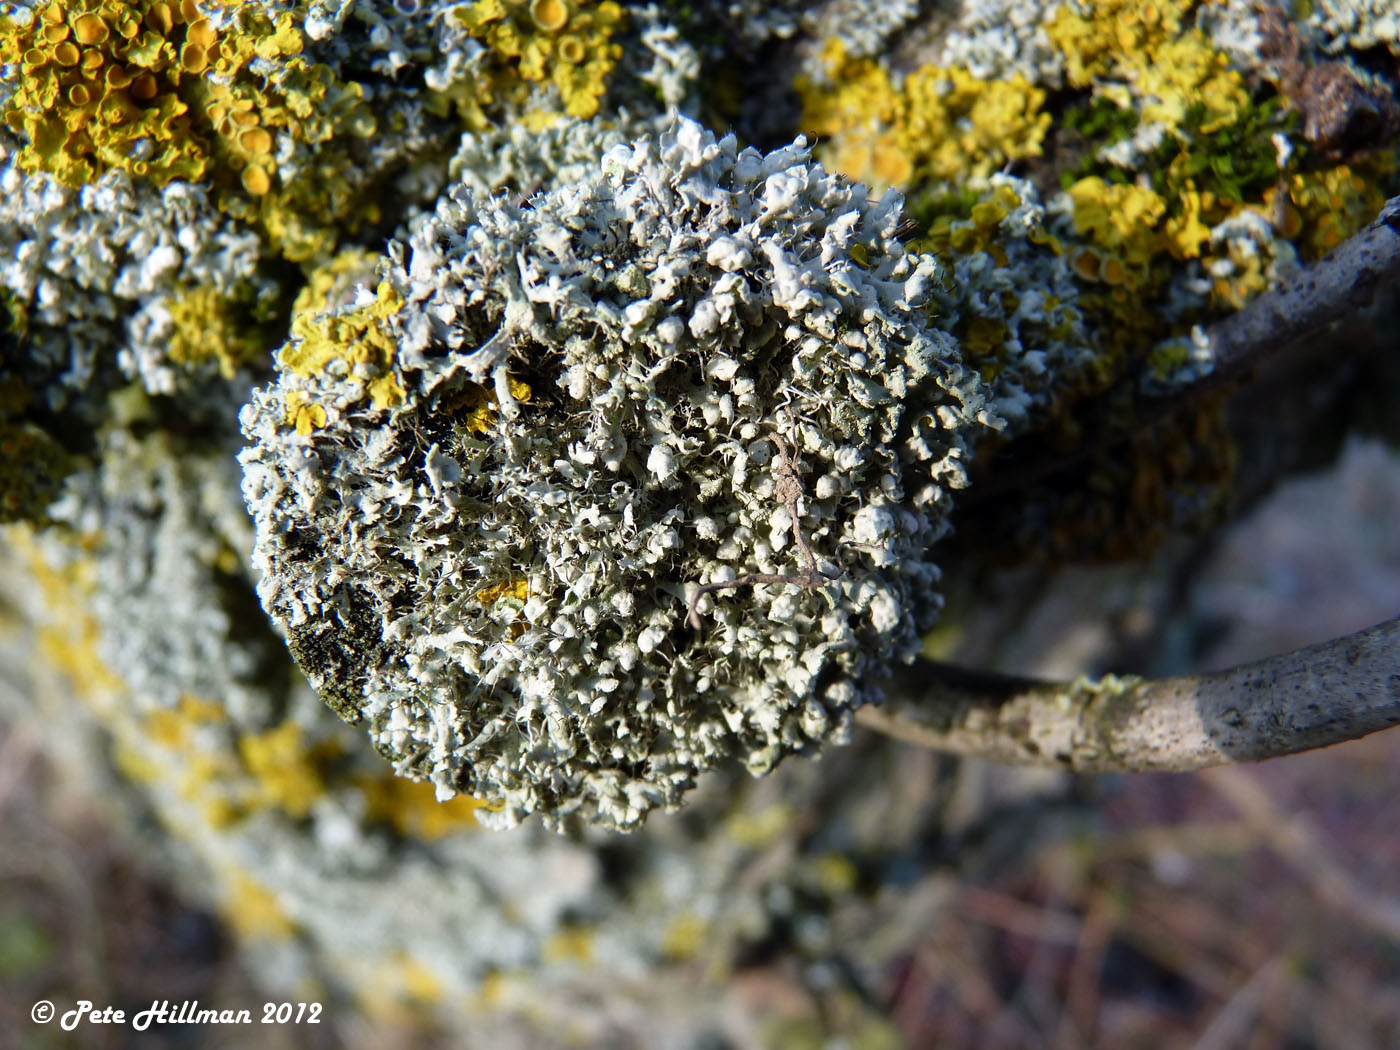 Rosette Lichen (Physcia adscendens)